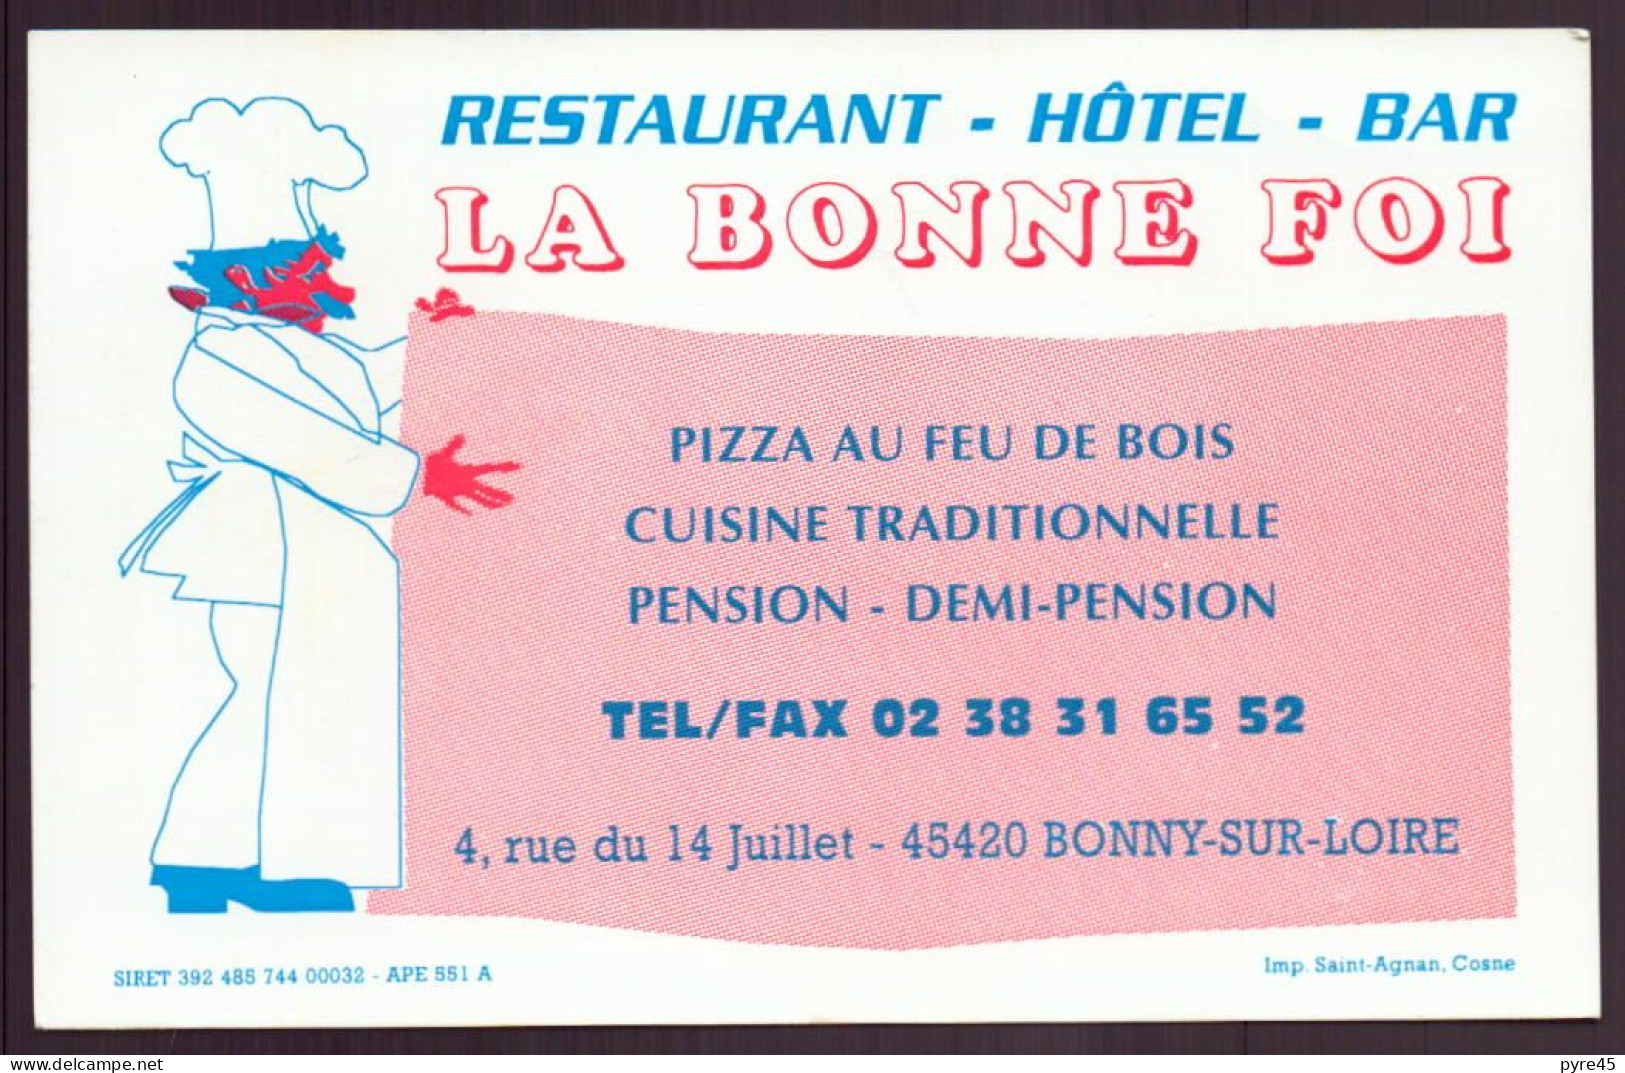 CARTE PUBLICITAIRE LA BONNE FOI A BONNY SUR LOIRE RESTAURANT HOTEL BAR - Visiting Cards